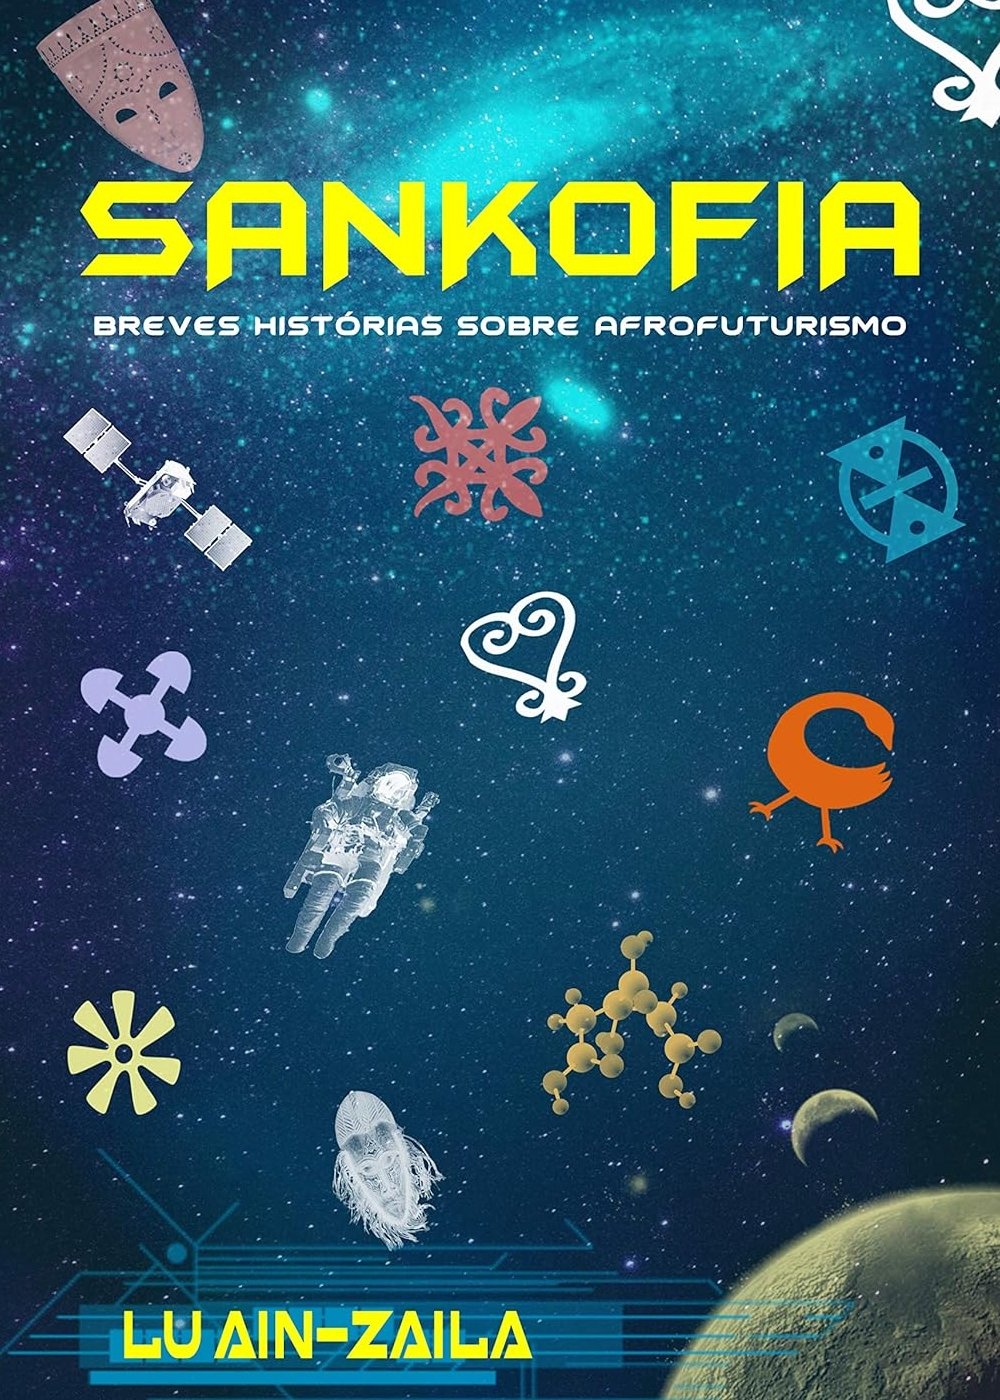 Sankofia - Breves histórias sobre afrofuturismo, de Lu Ain-Zaila - leitura - livros de autores negros - livro - dica - https://stealthelook.com.br